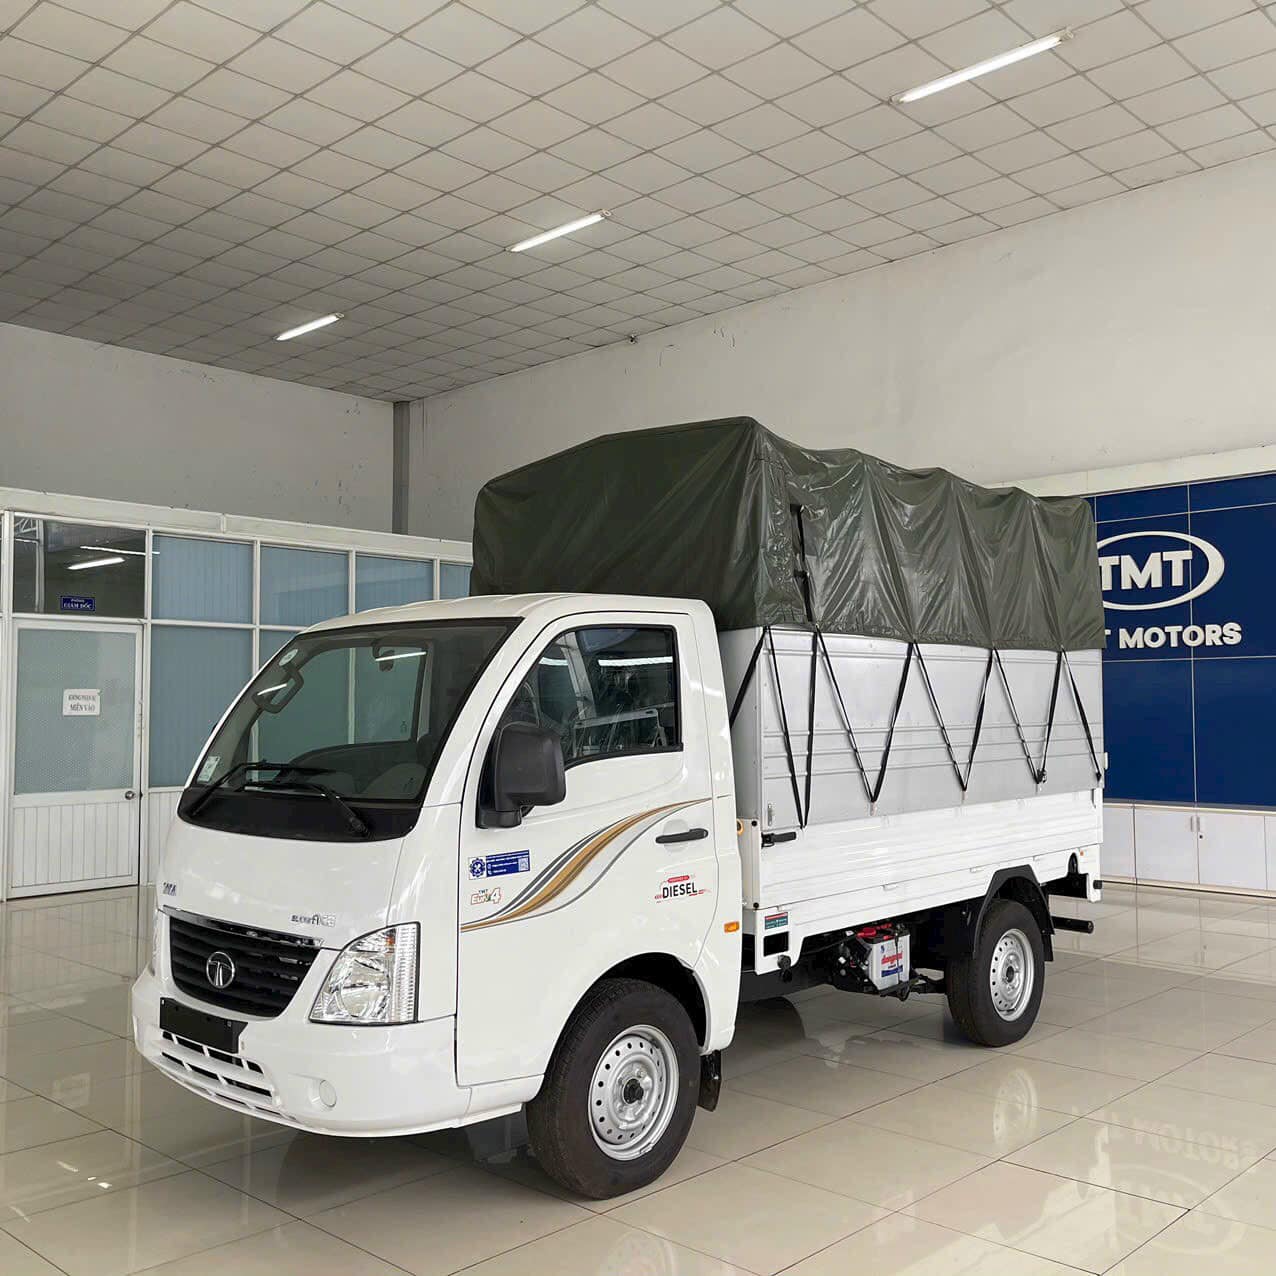 TƯ VẤN : Thay lốp xe tải Tata Super ACE ở Nhơn Trạch, Đồng Nai.